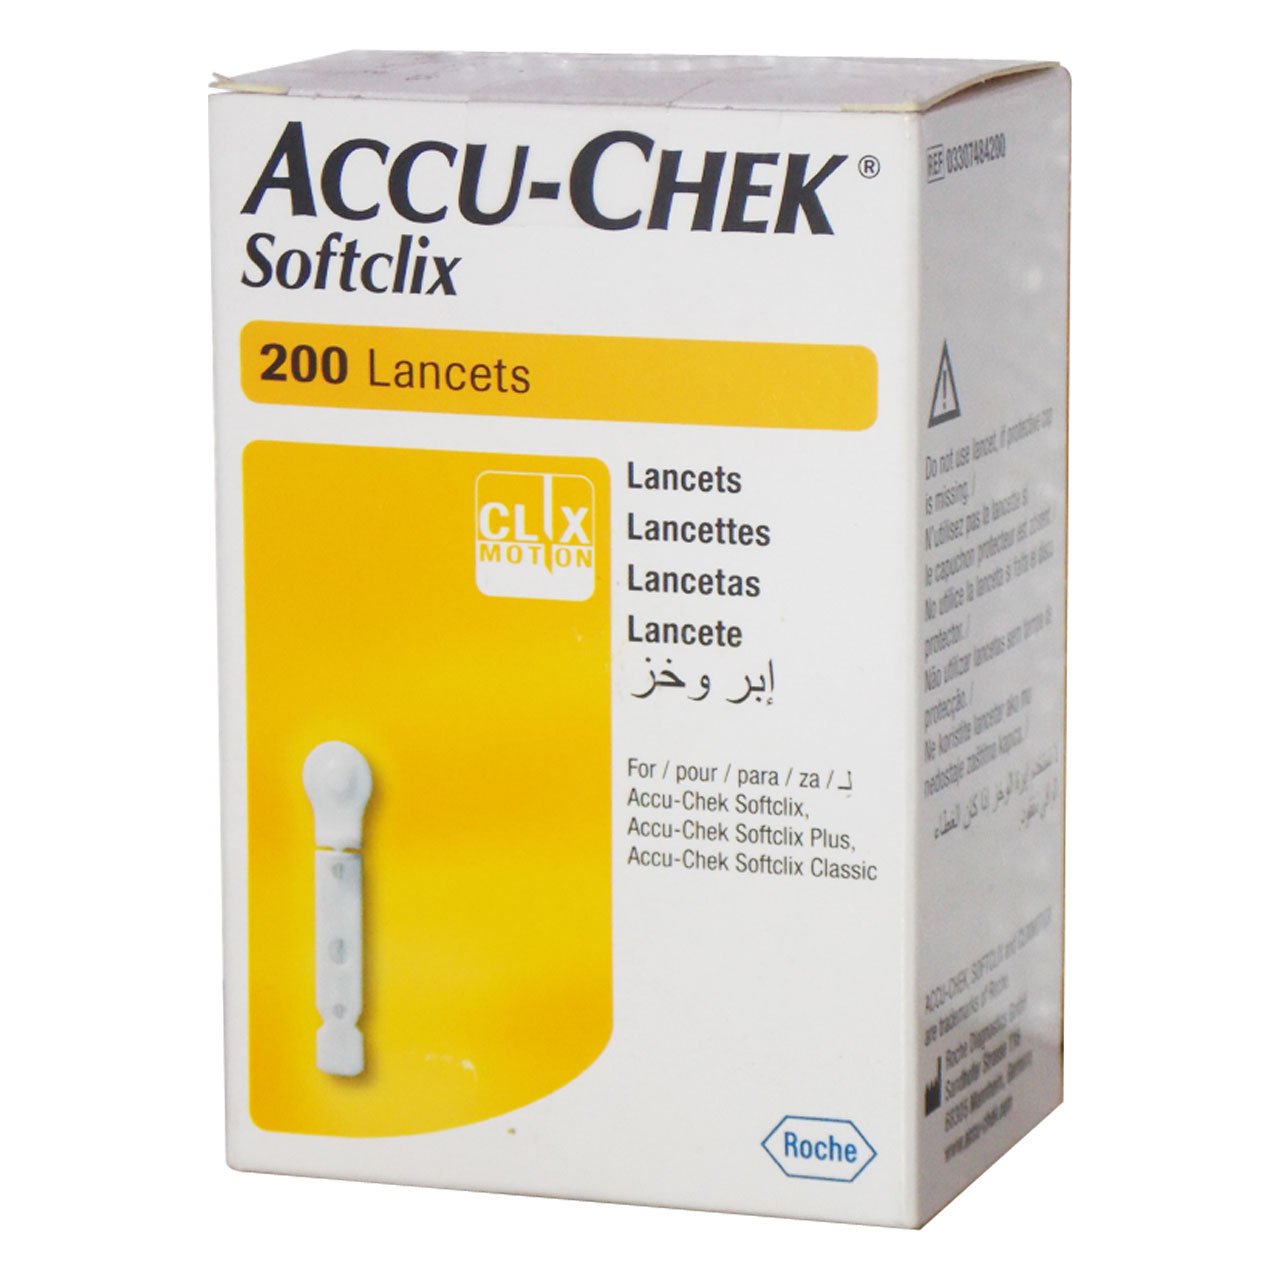 เข็มเจาะเลือด Accu-Chek Softclix Lancet (ขายแยกชิ้น)